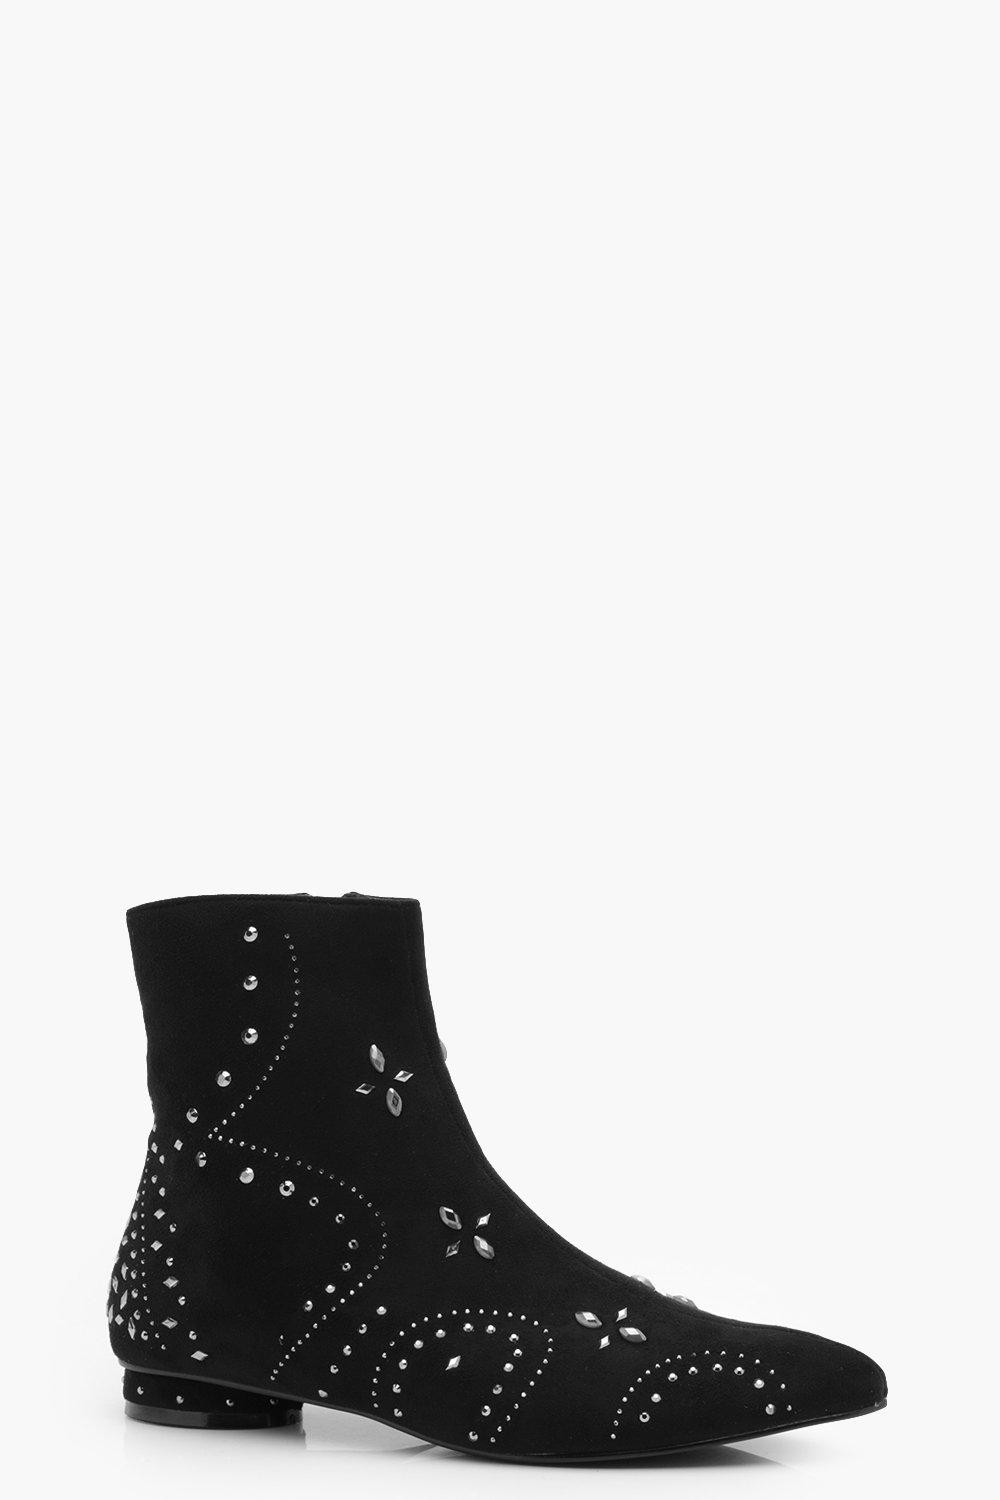 black embellished ankle boots